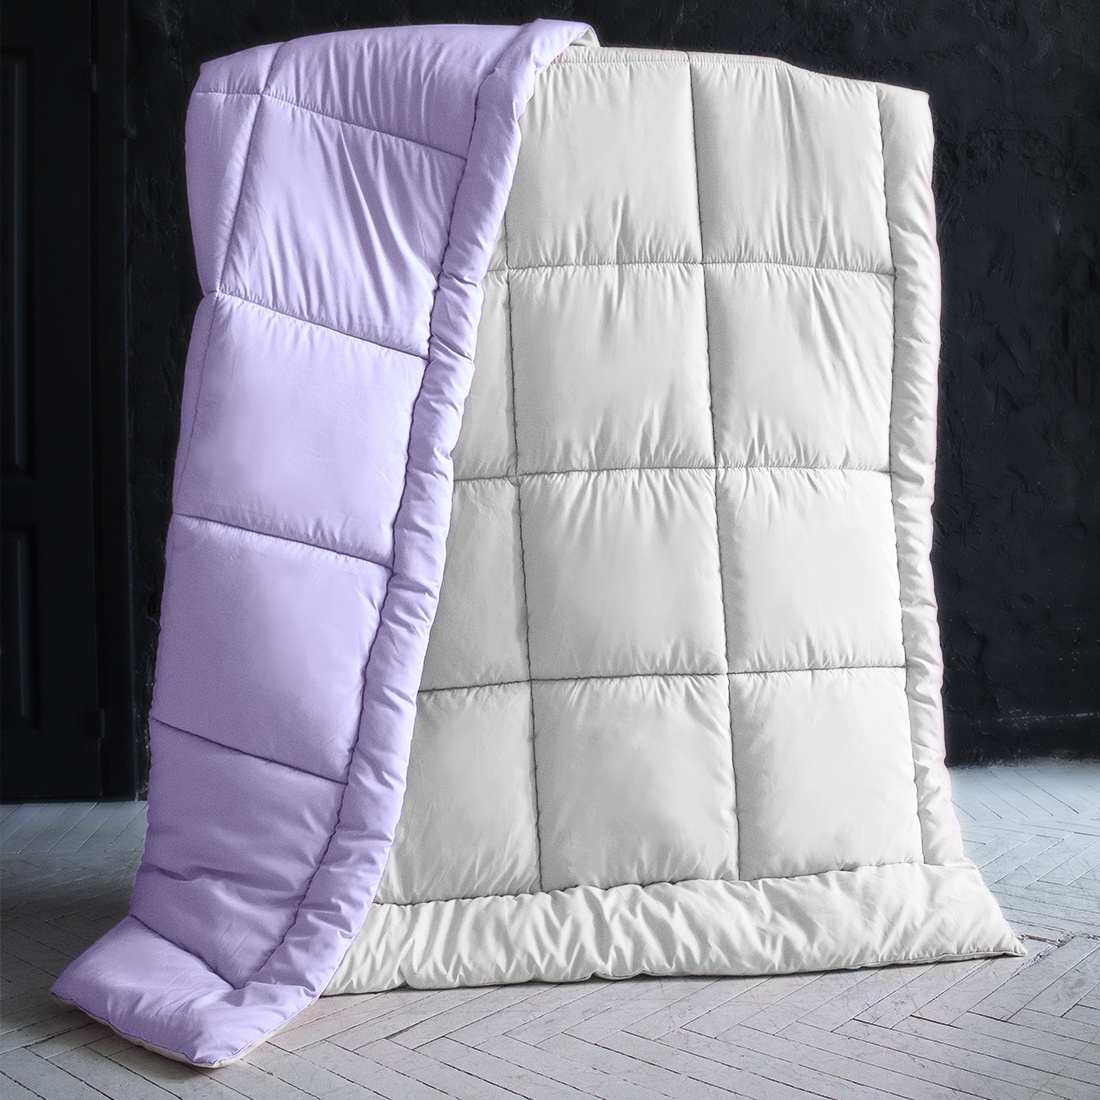 фото Одеяло "SleepiX", Мультиколор, цвет: белый, фиолетовый, 220х240 см Sleep ix